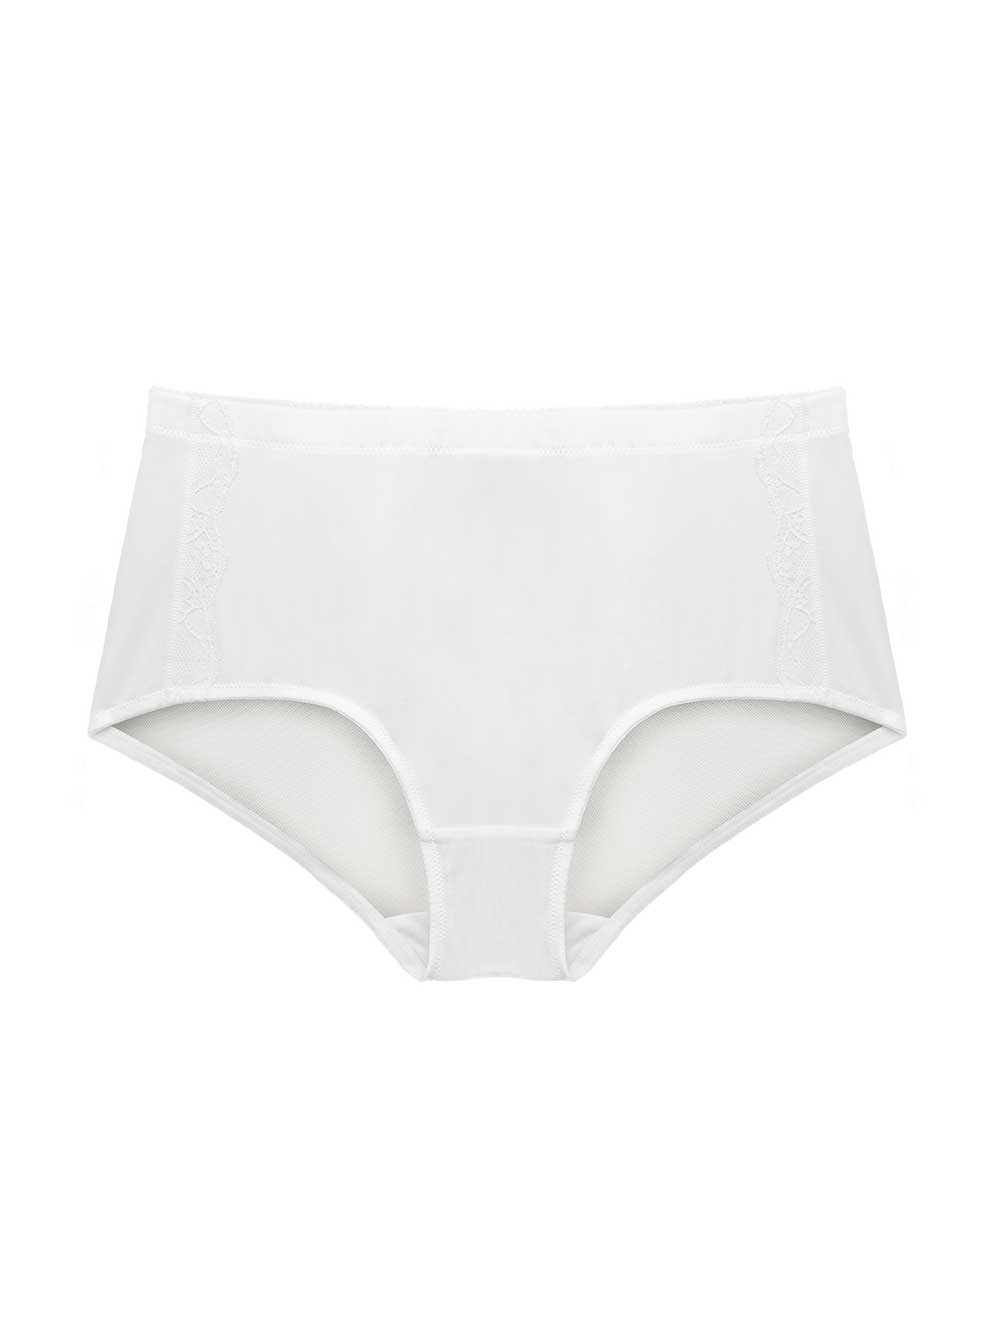 Elissa High Waist Control Panty - Pearl White – Parfait Lingerie